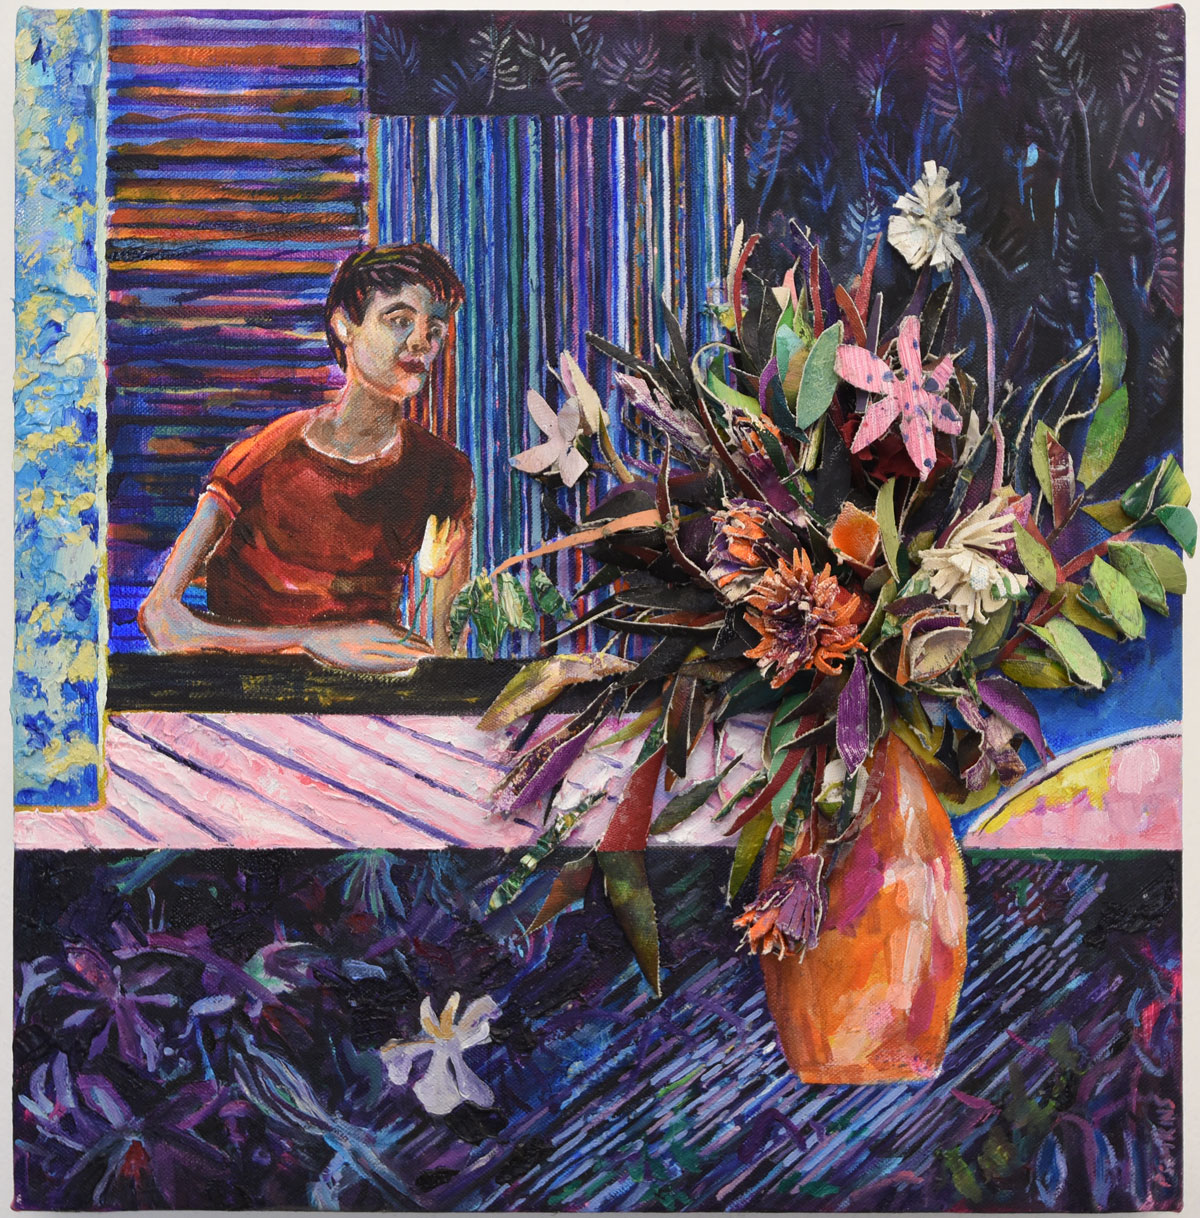 Hernan-Bas-inspired-flowers_patrick-simkins_artist_collage_oil-paint_Paris_2020